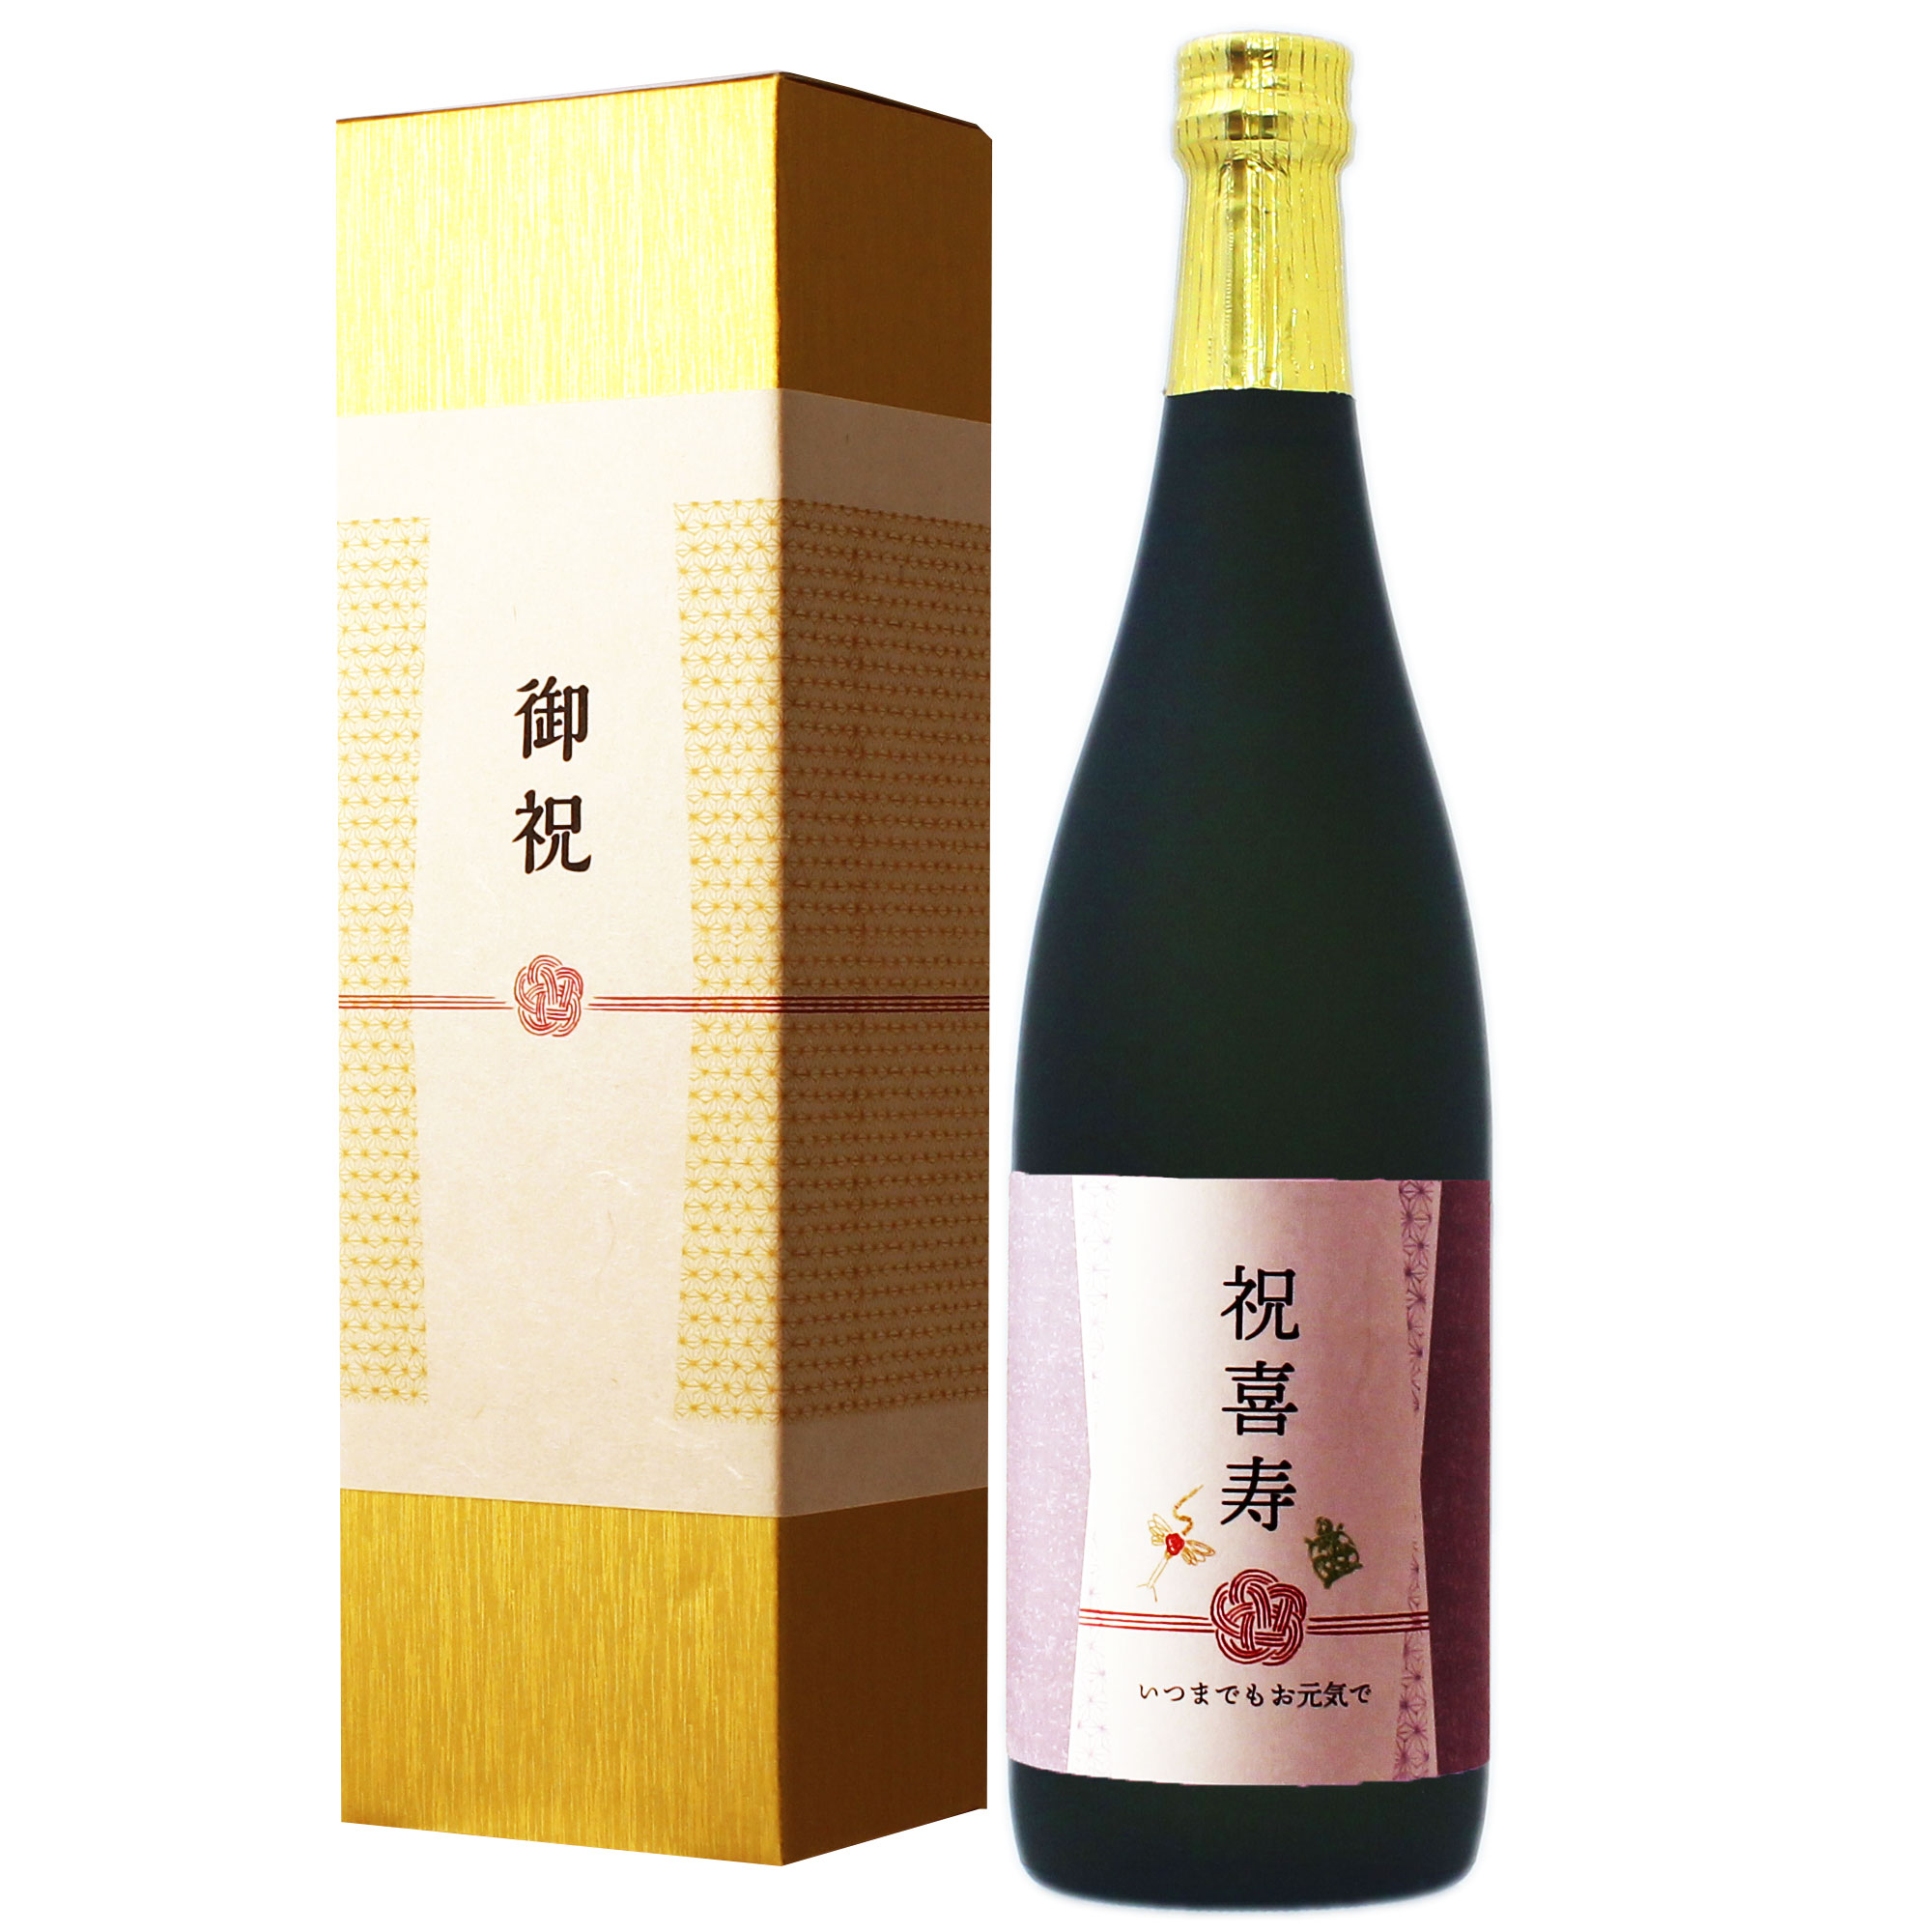 ≪喜寿祝い専用黒瓶日本酒≫ 喜寿祝い プレゼント 77歳 ギフト 純米酒